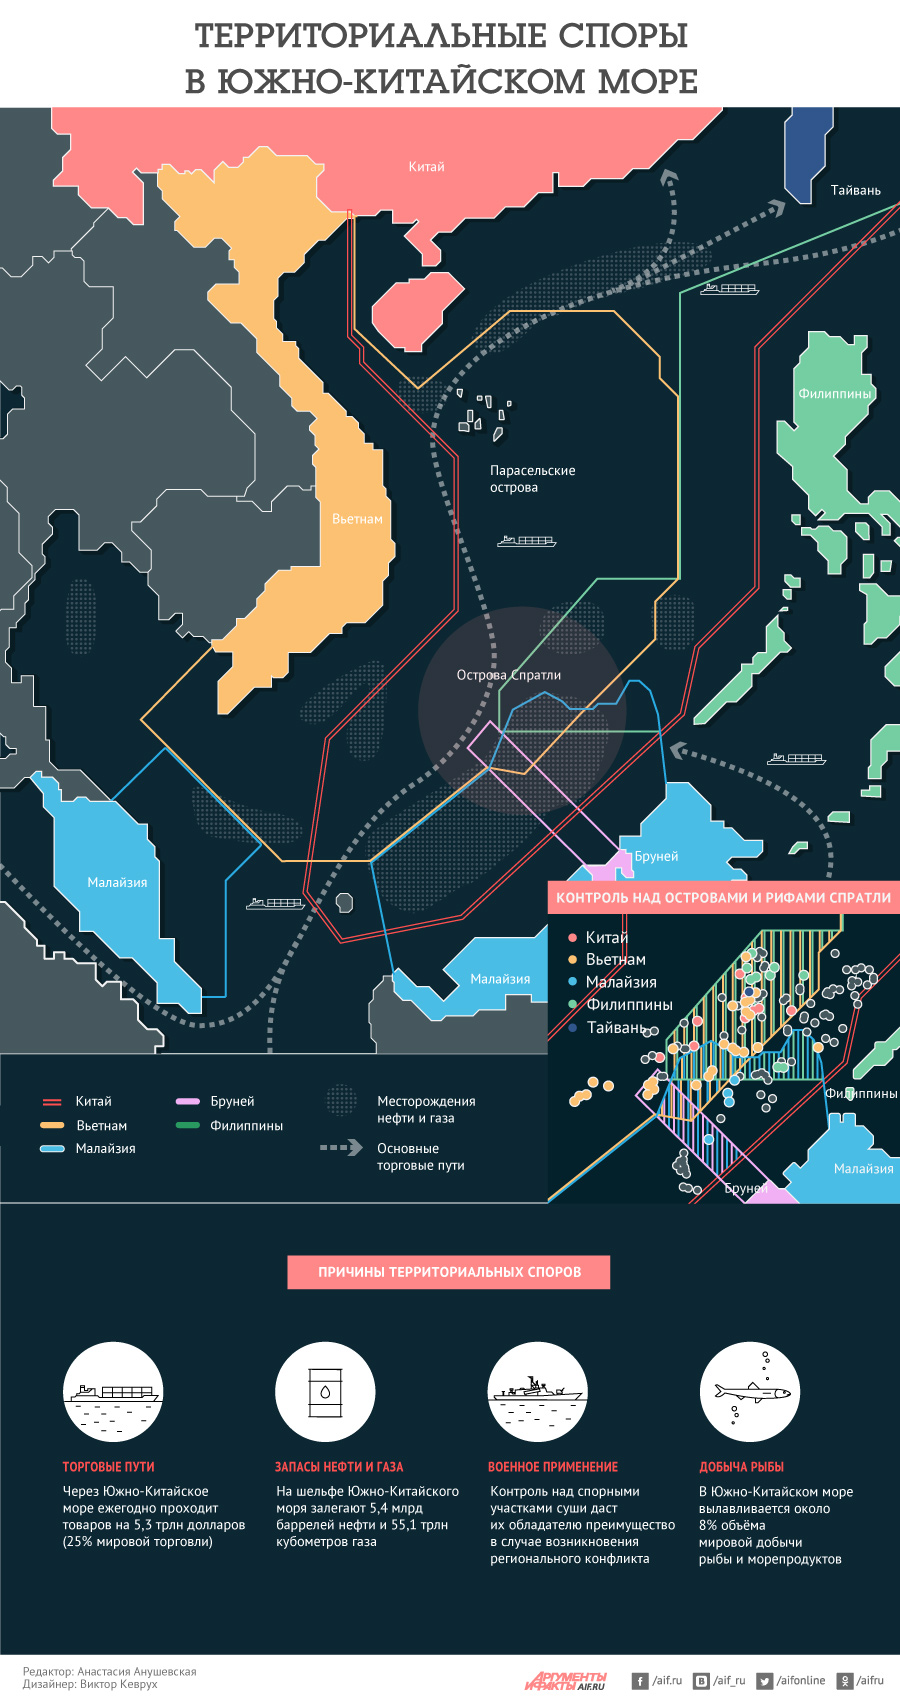 Международно территориальные споры. Спорные территории Китая в Южно-китайском море. Территориальный спор в Южно-китайском море. Спорные территории в Южно китайском море на карте. Территориальные претензии в Южно китайском море.